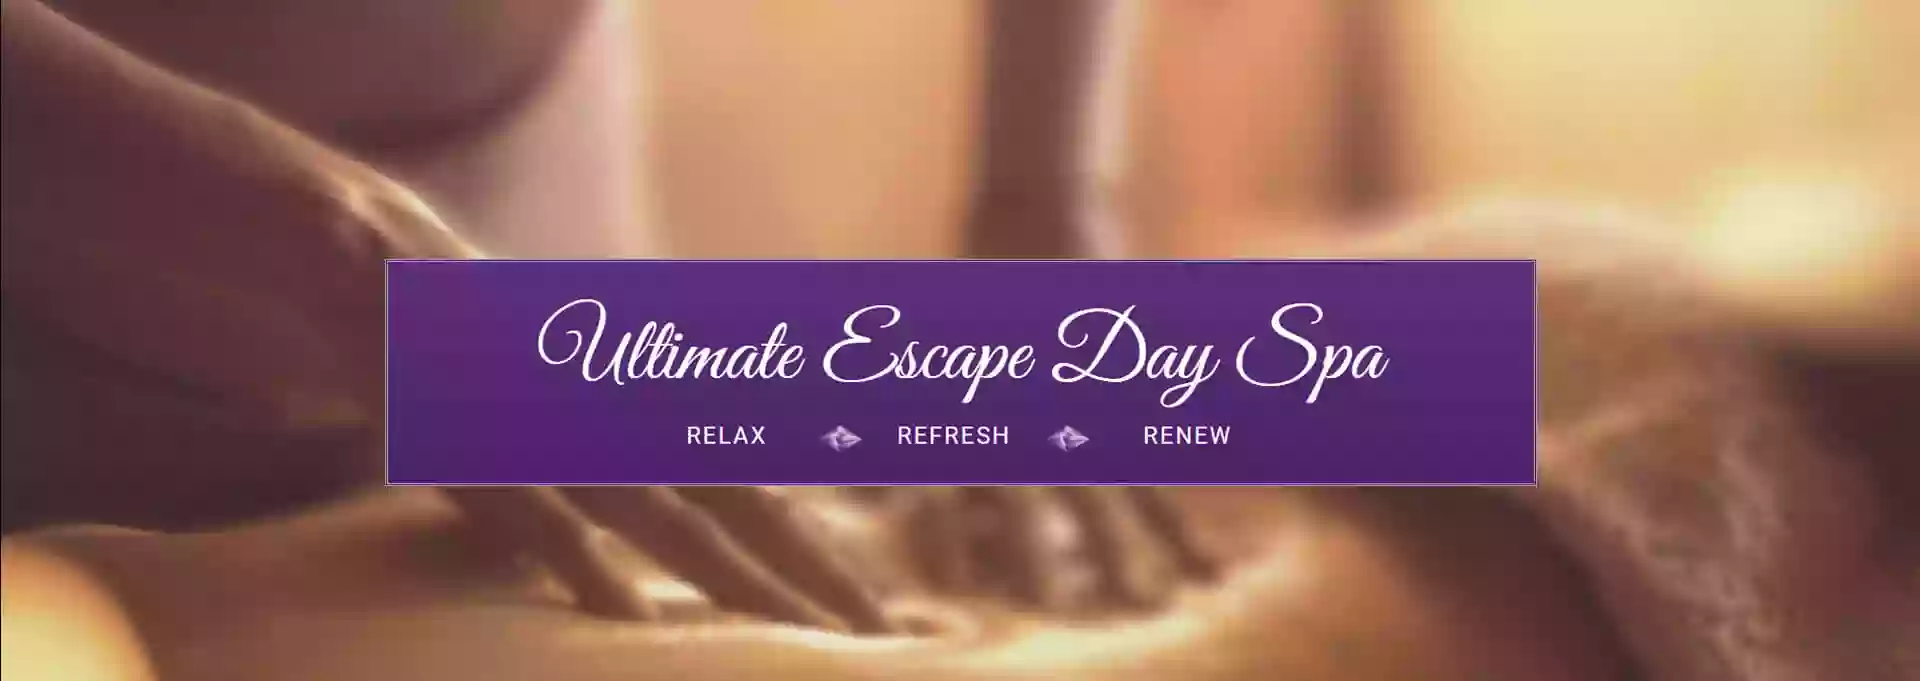 Ultimate Escape Day Spa